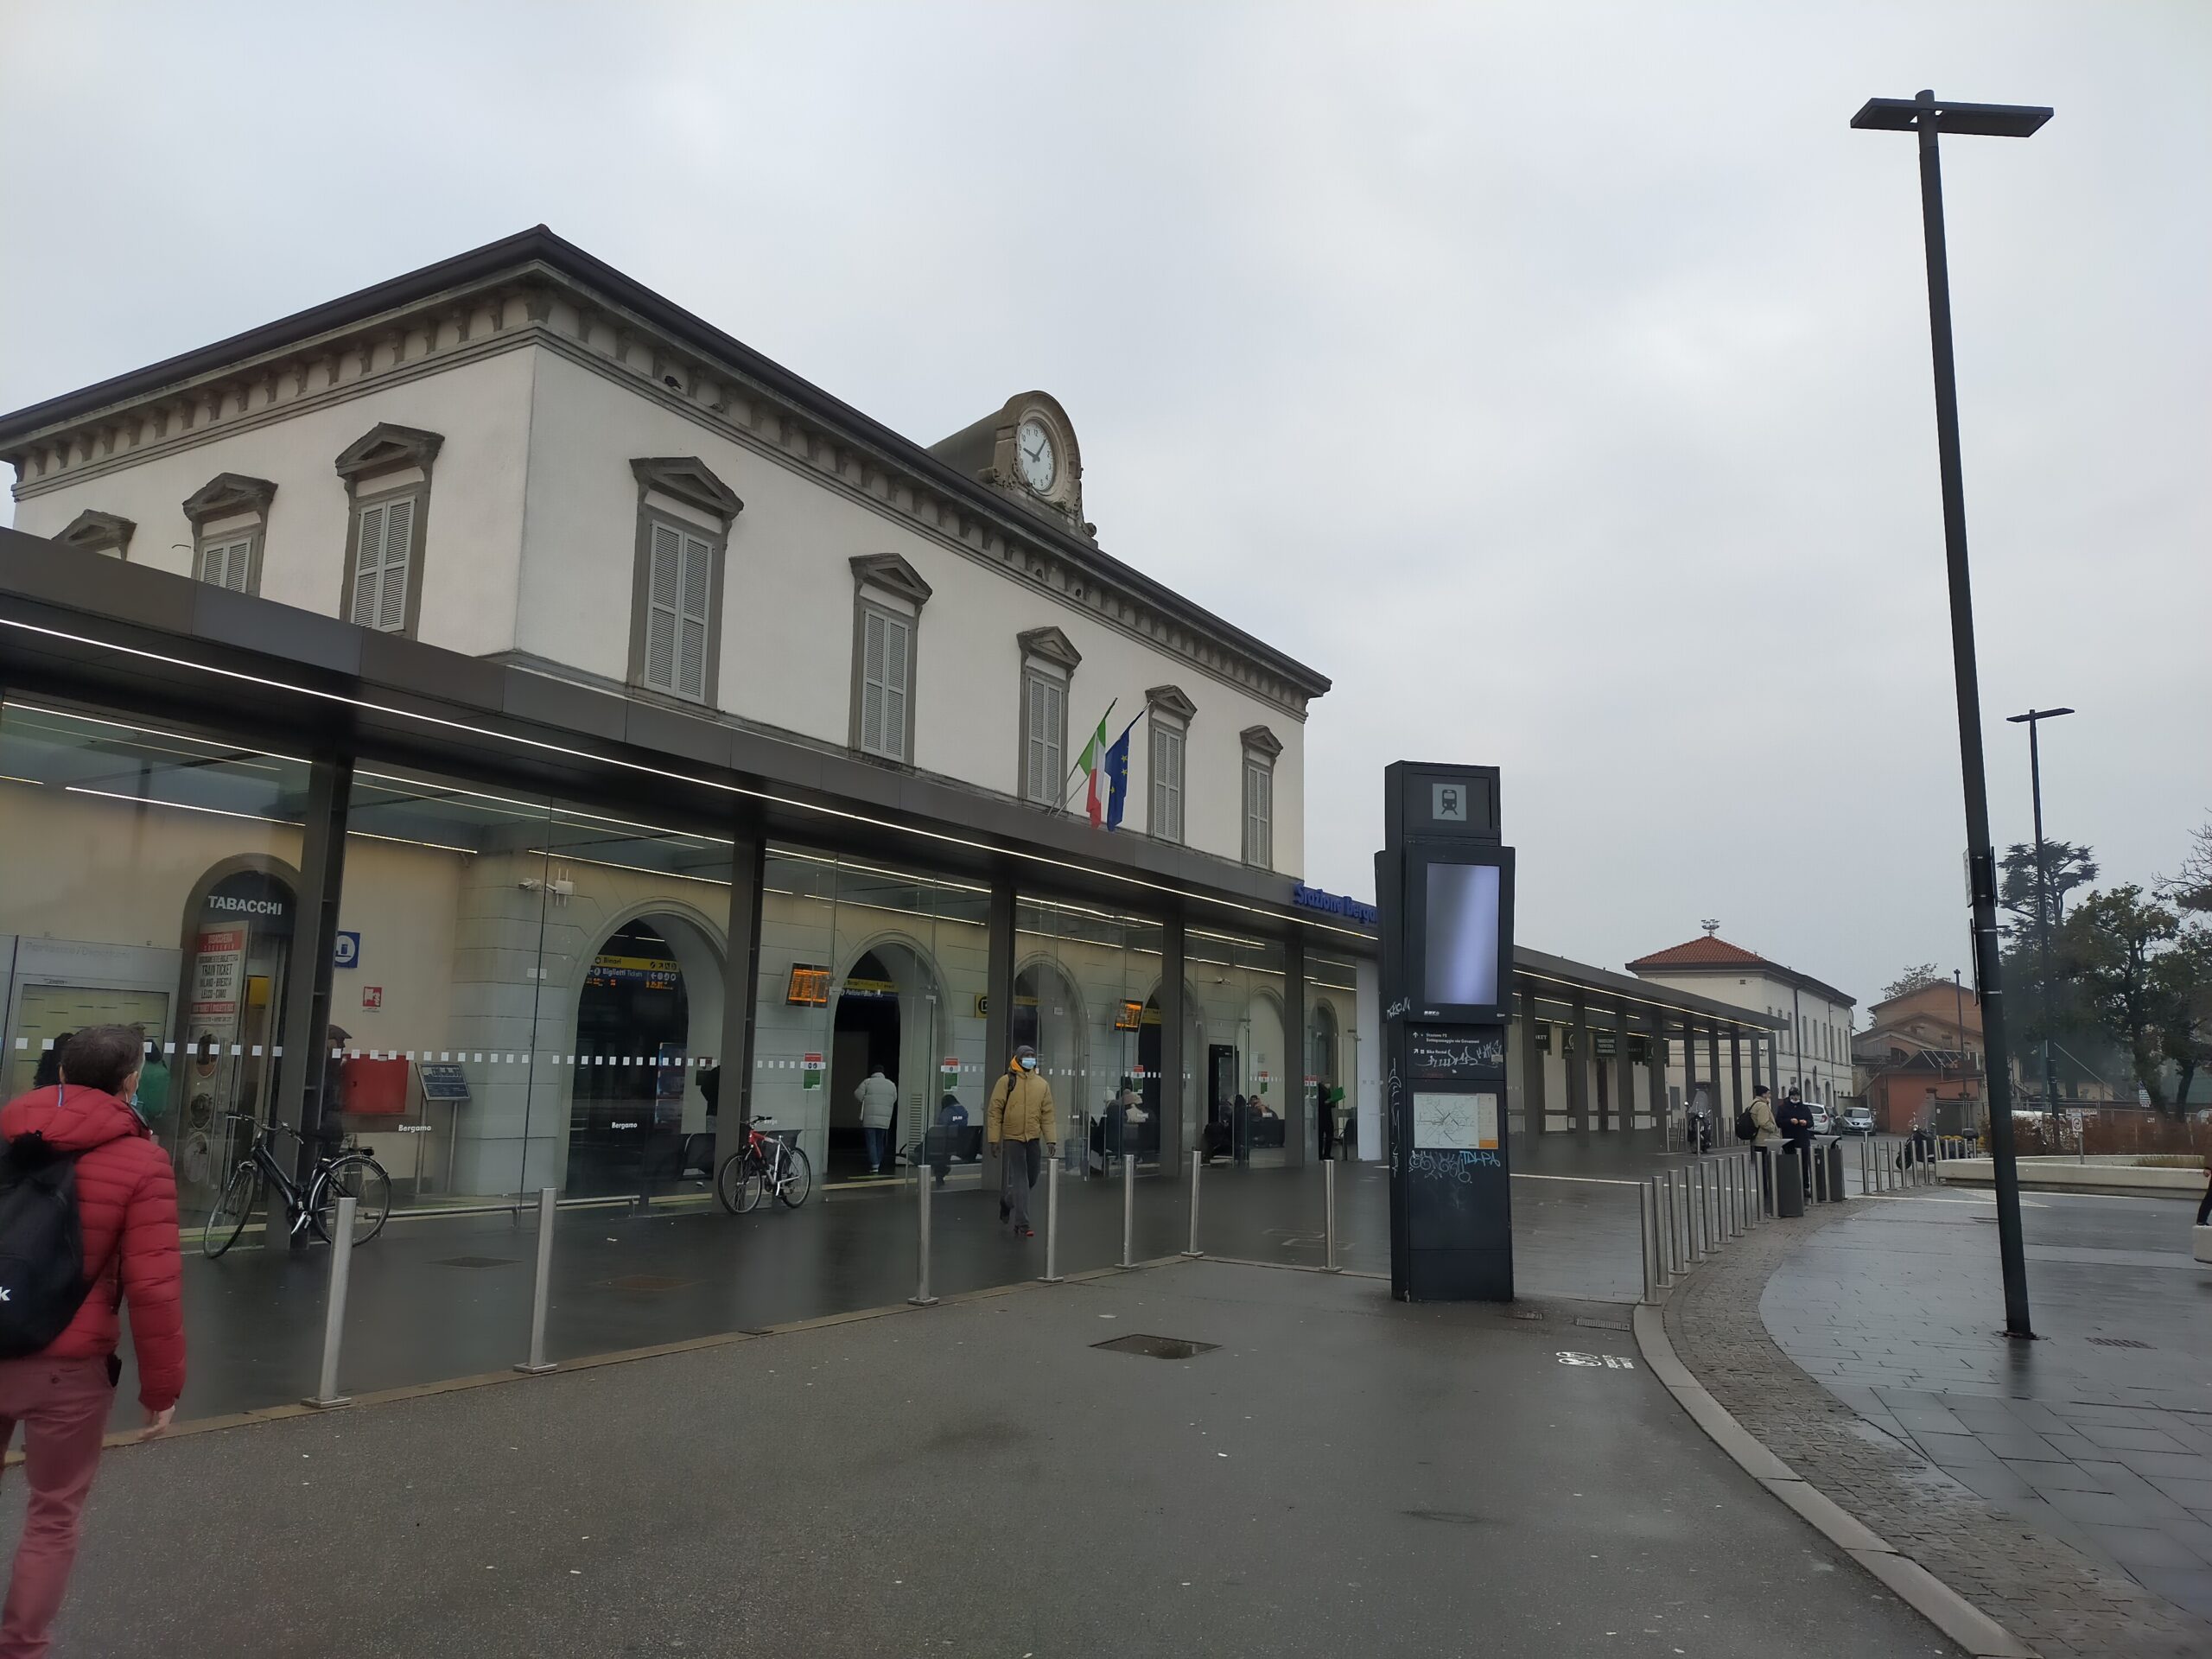 Bergamo Central Station